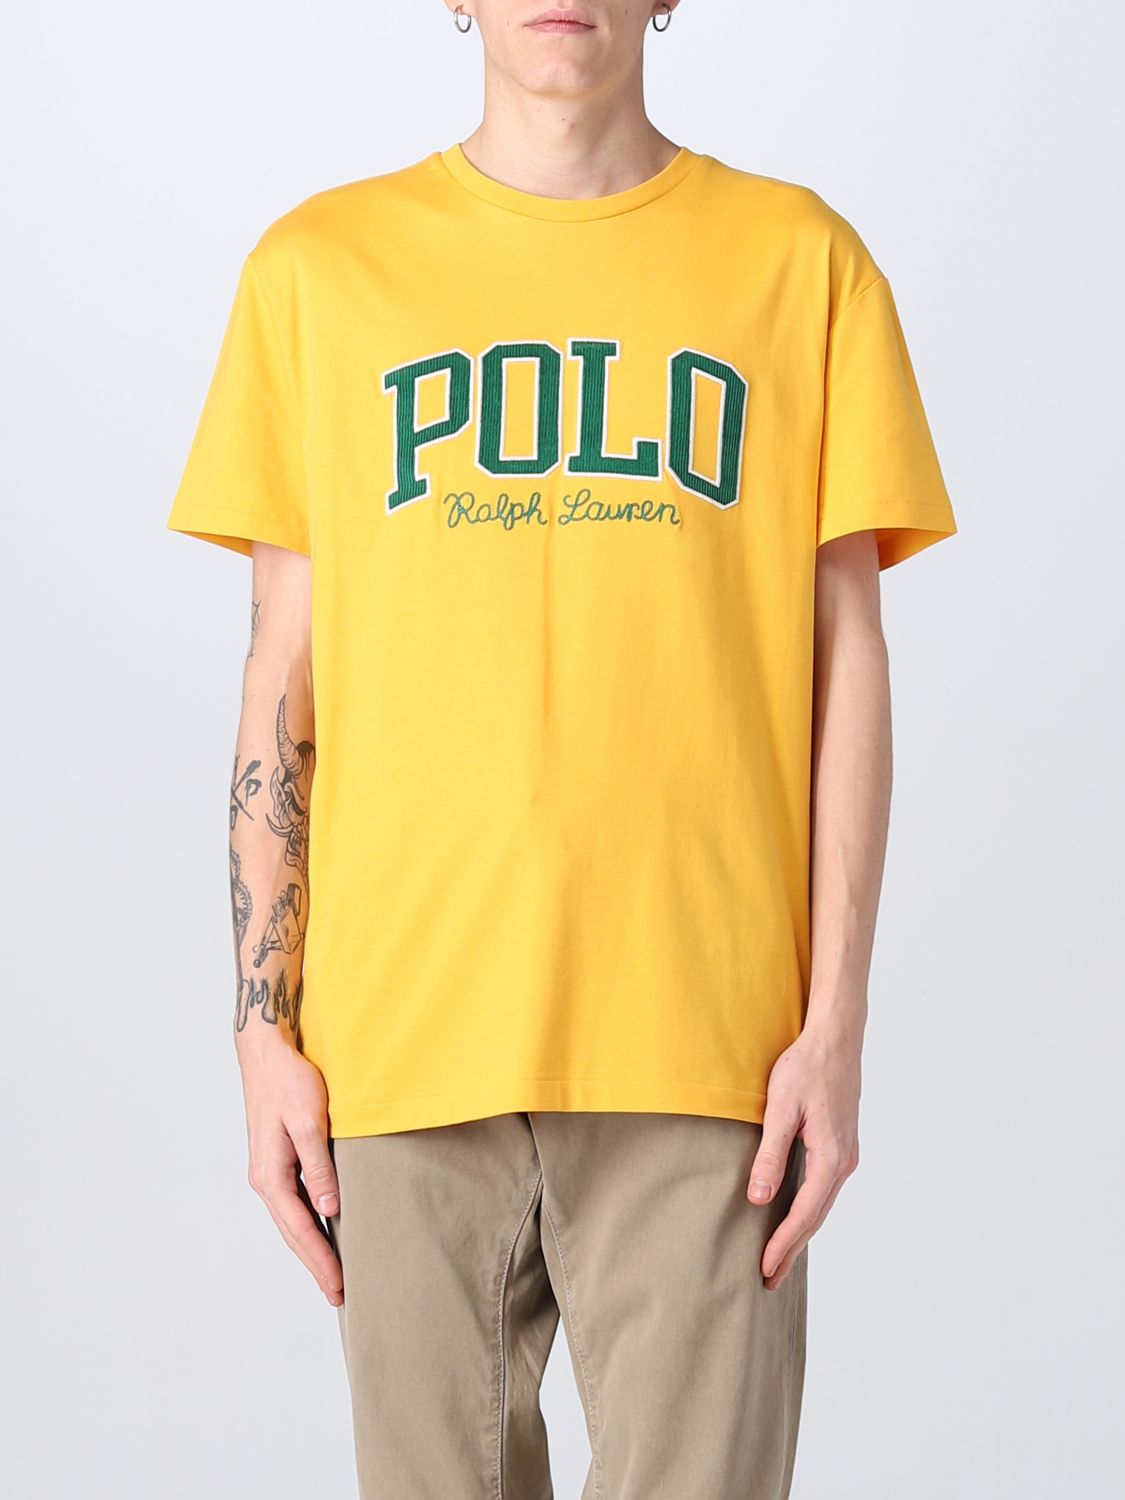 POLO RALPH LAUREN: t-shirt for man - Gold | Polo Ralph Lauren t-shirt  710878616 online on 